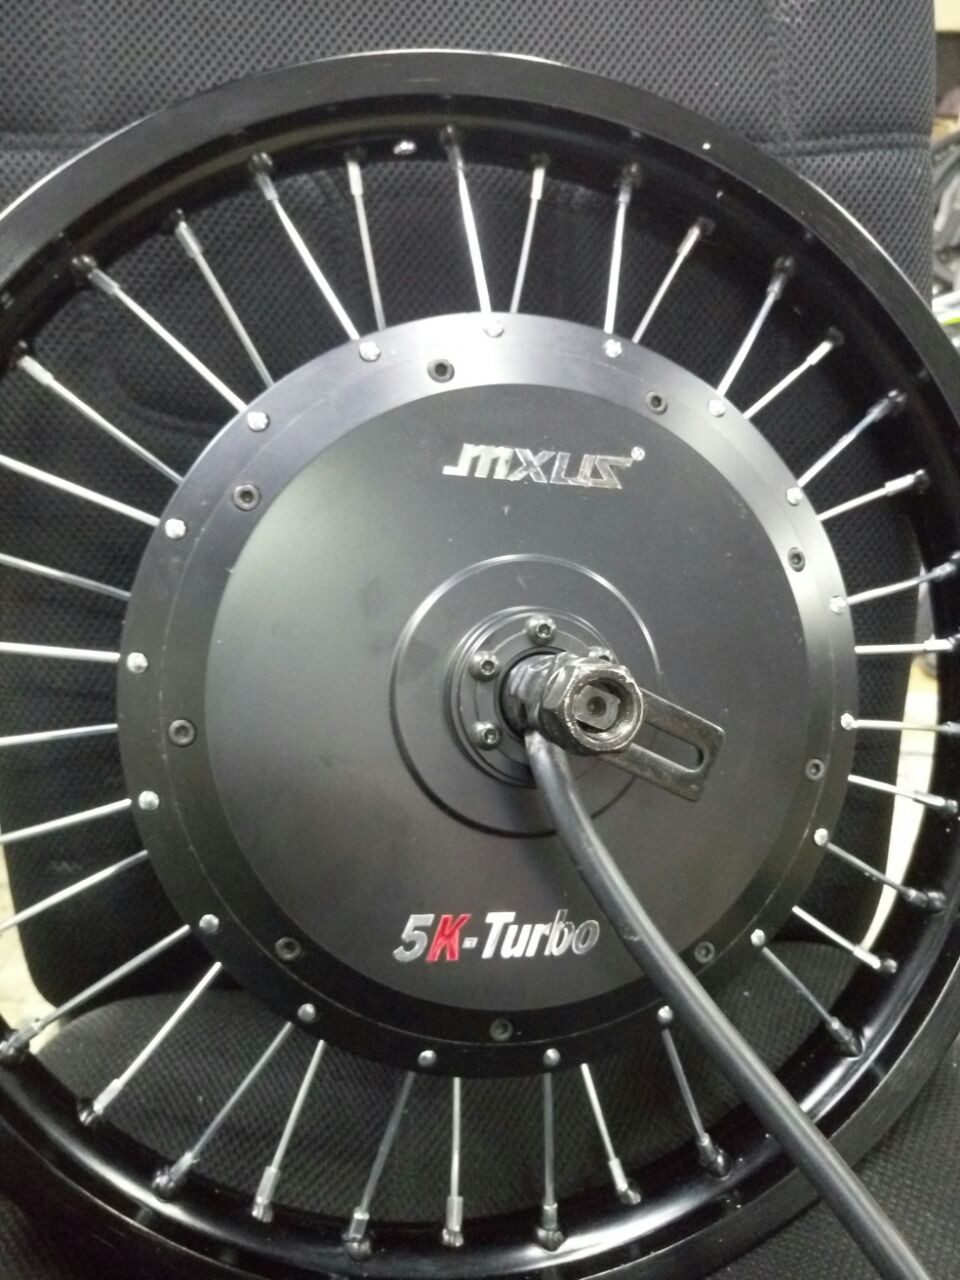 MXUS 5K turbo 5000 Wt